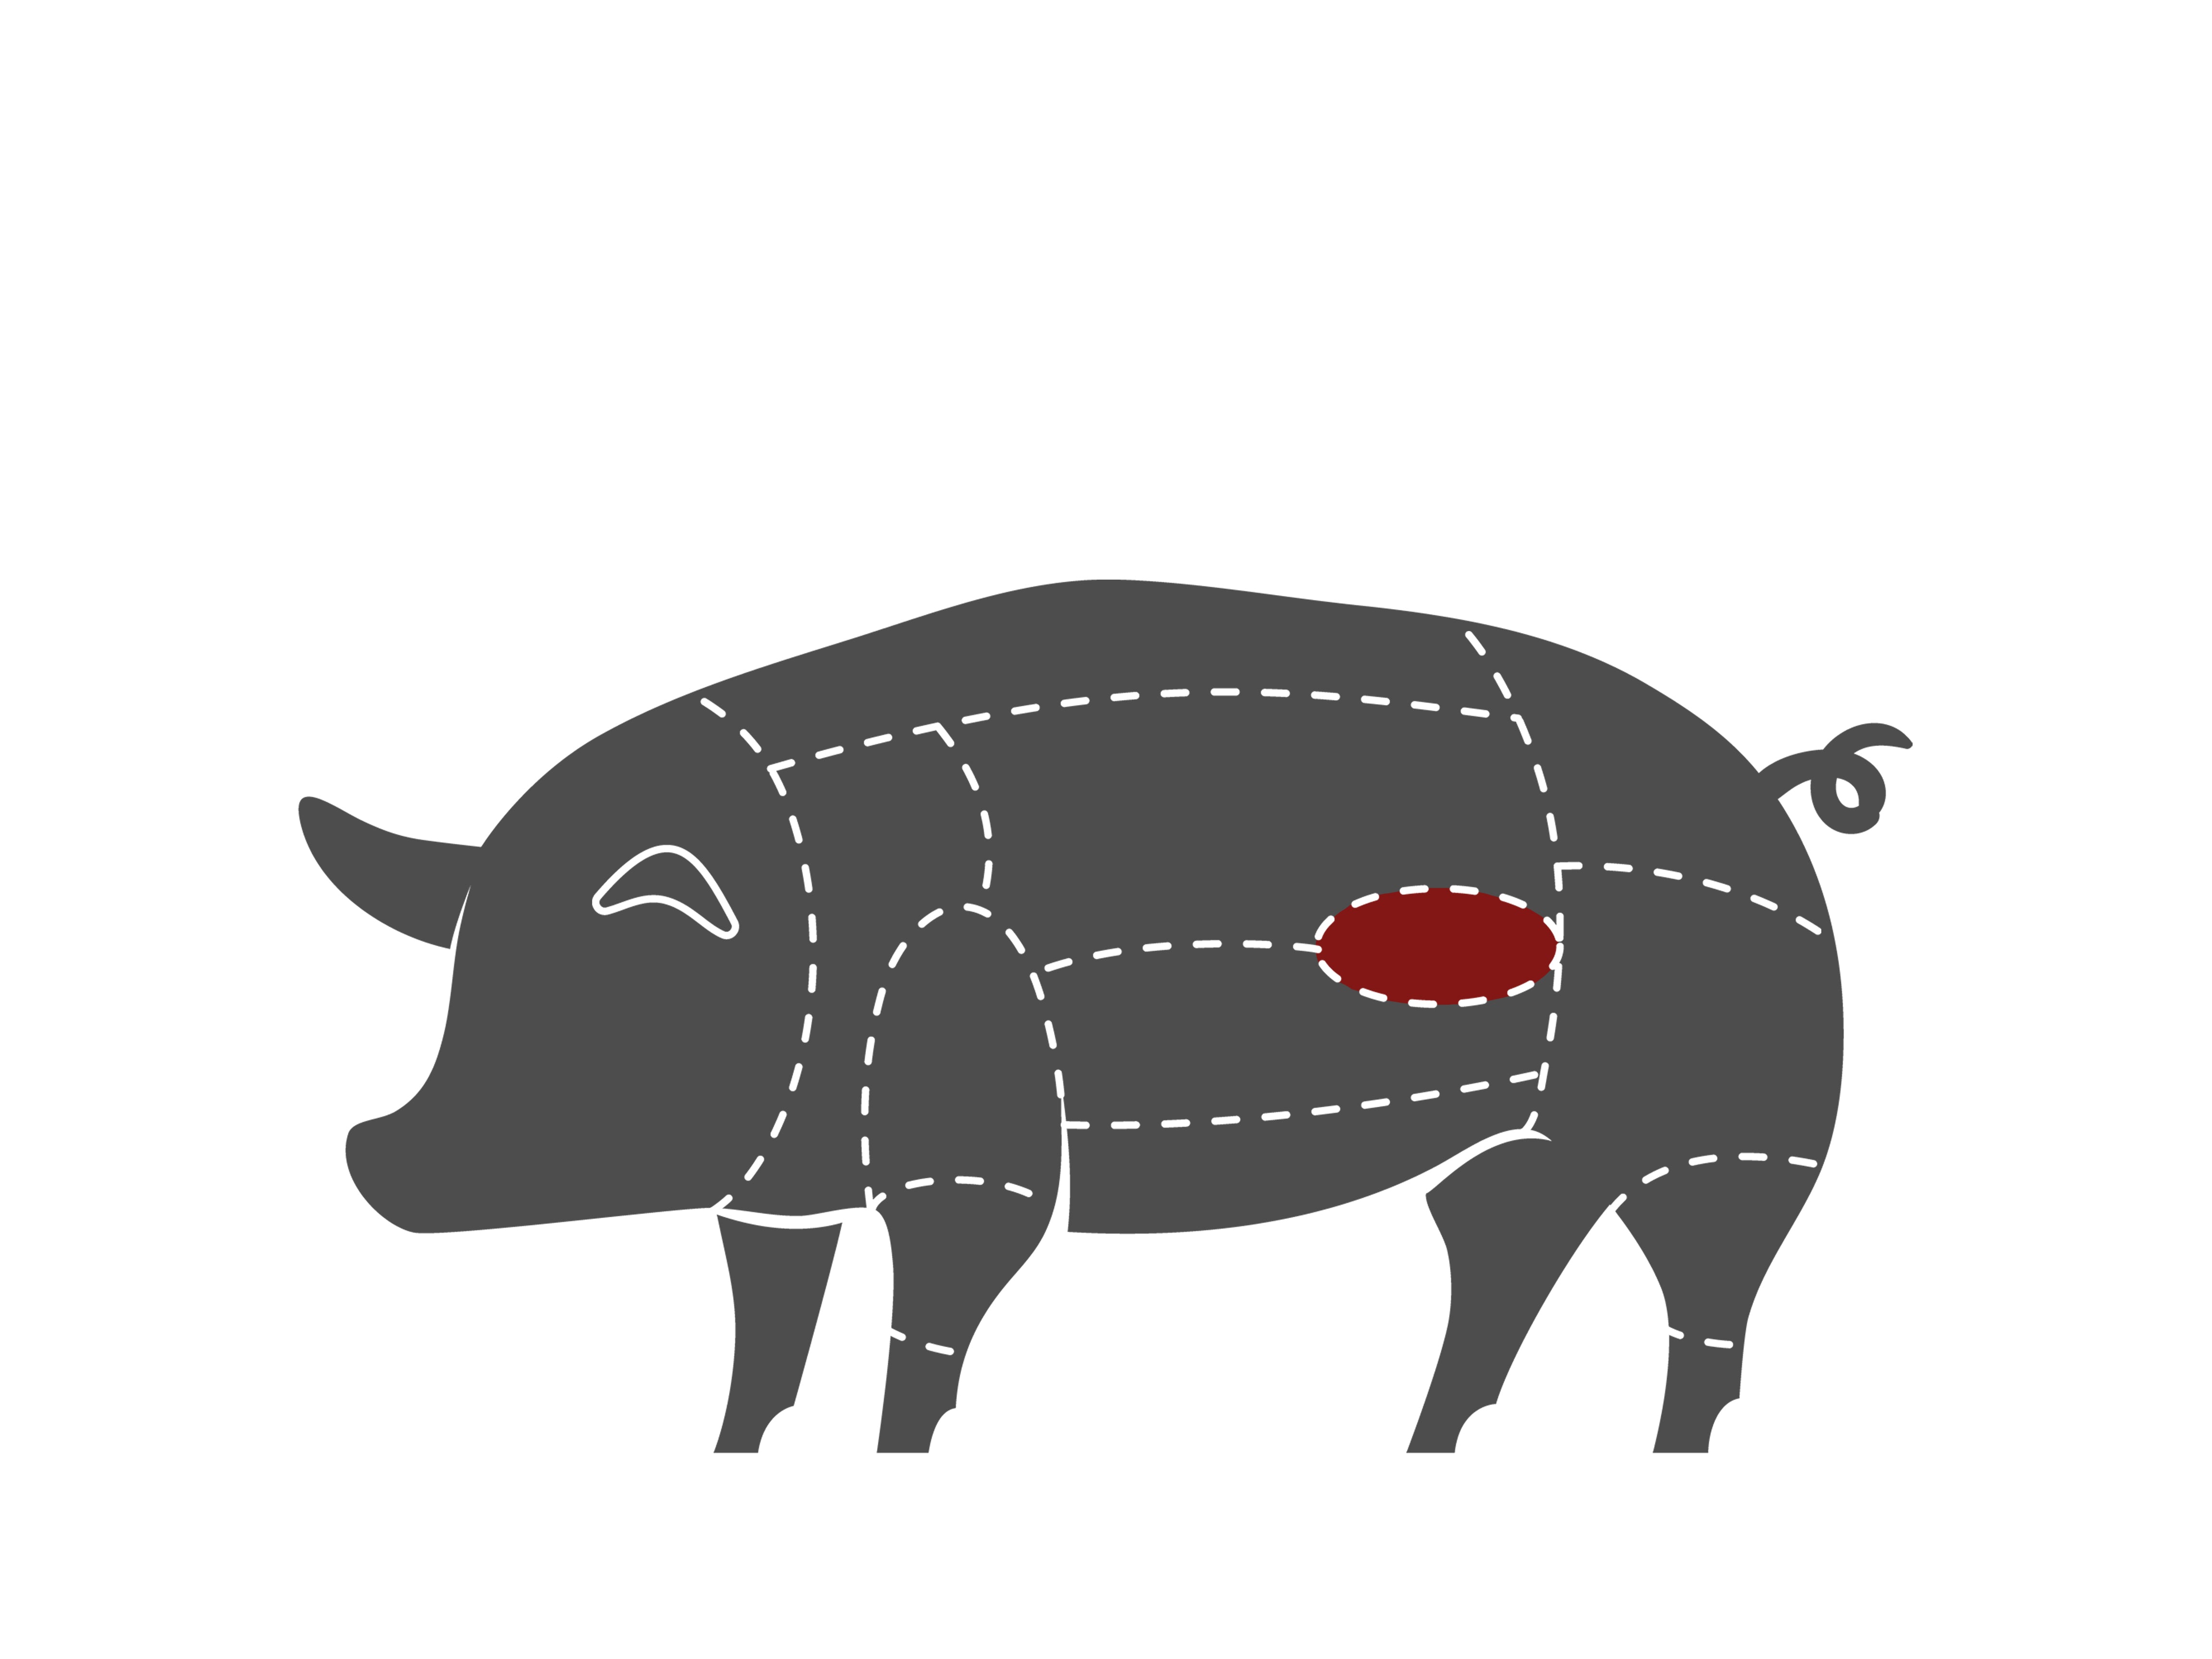 Schwein-Filet-FleischteilqQTHHp8M5wWl6